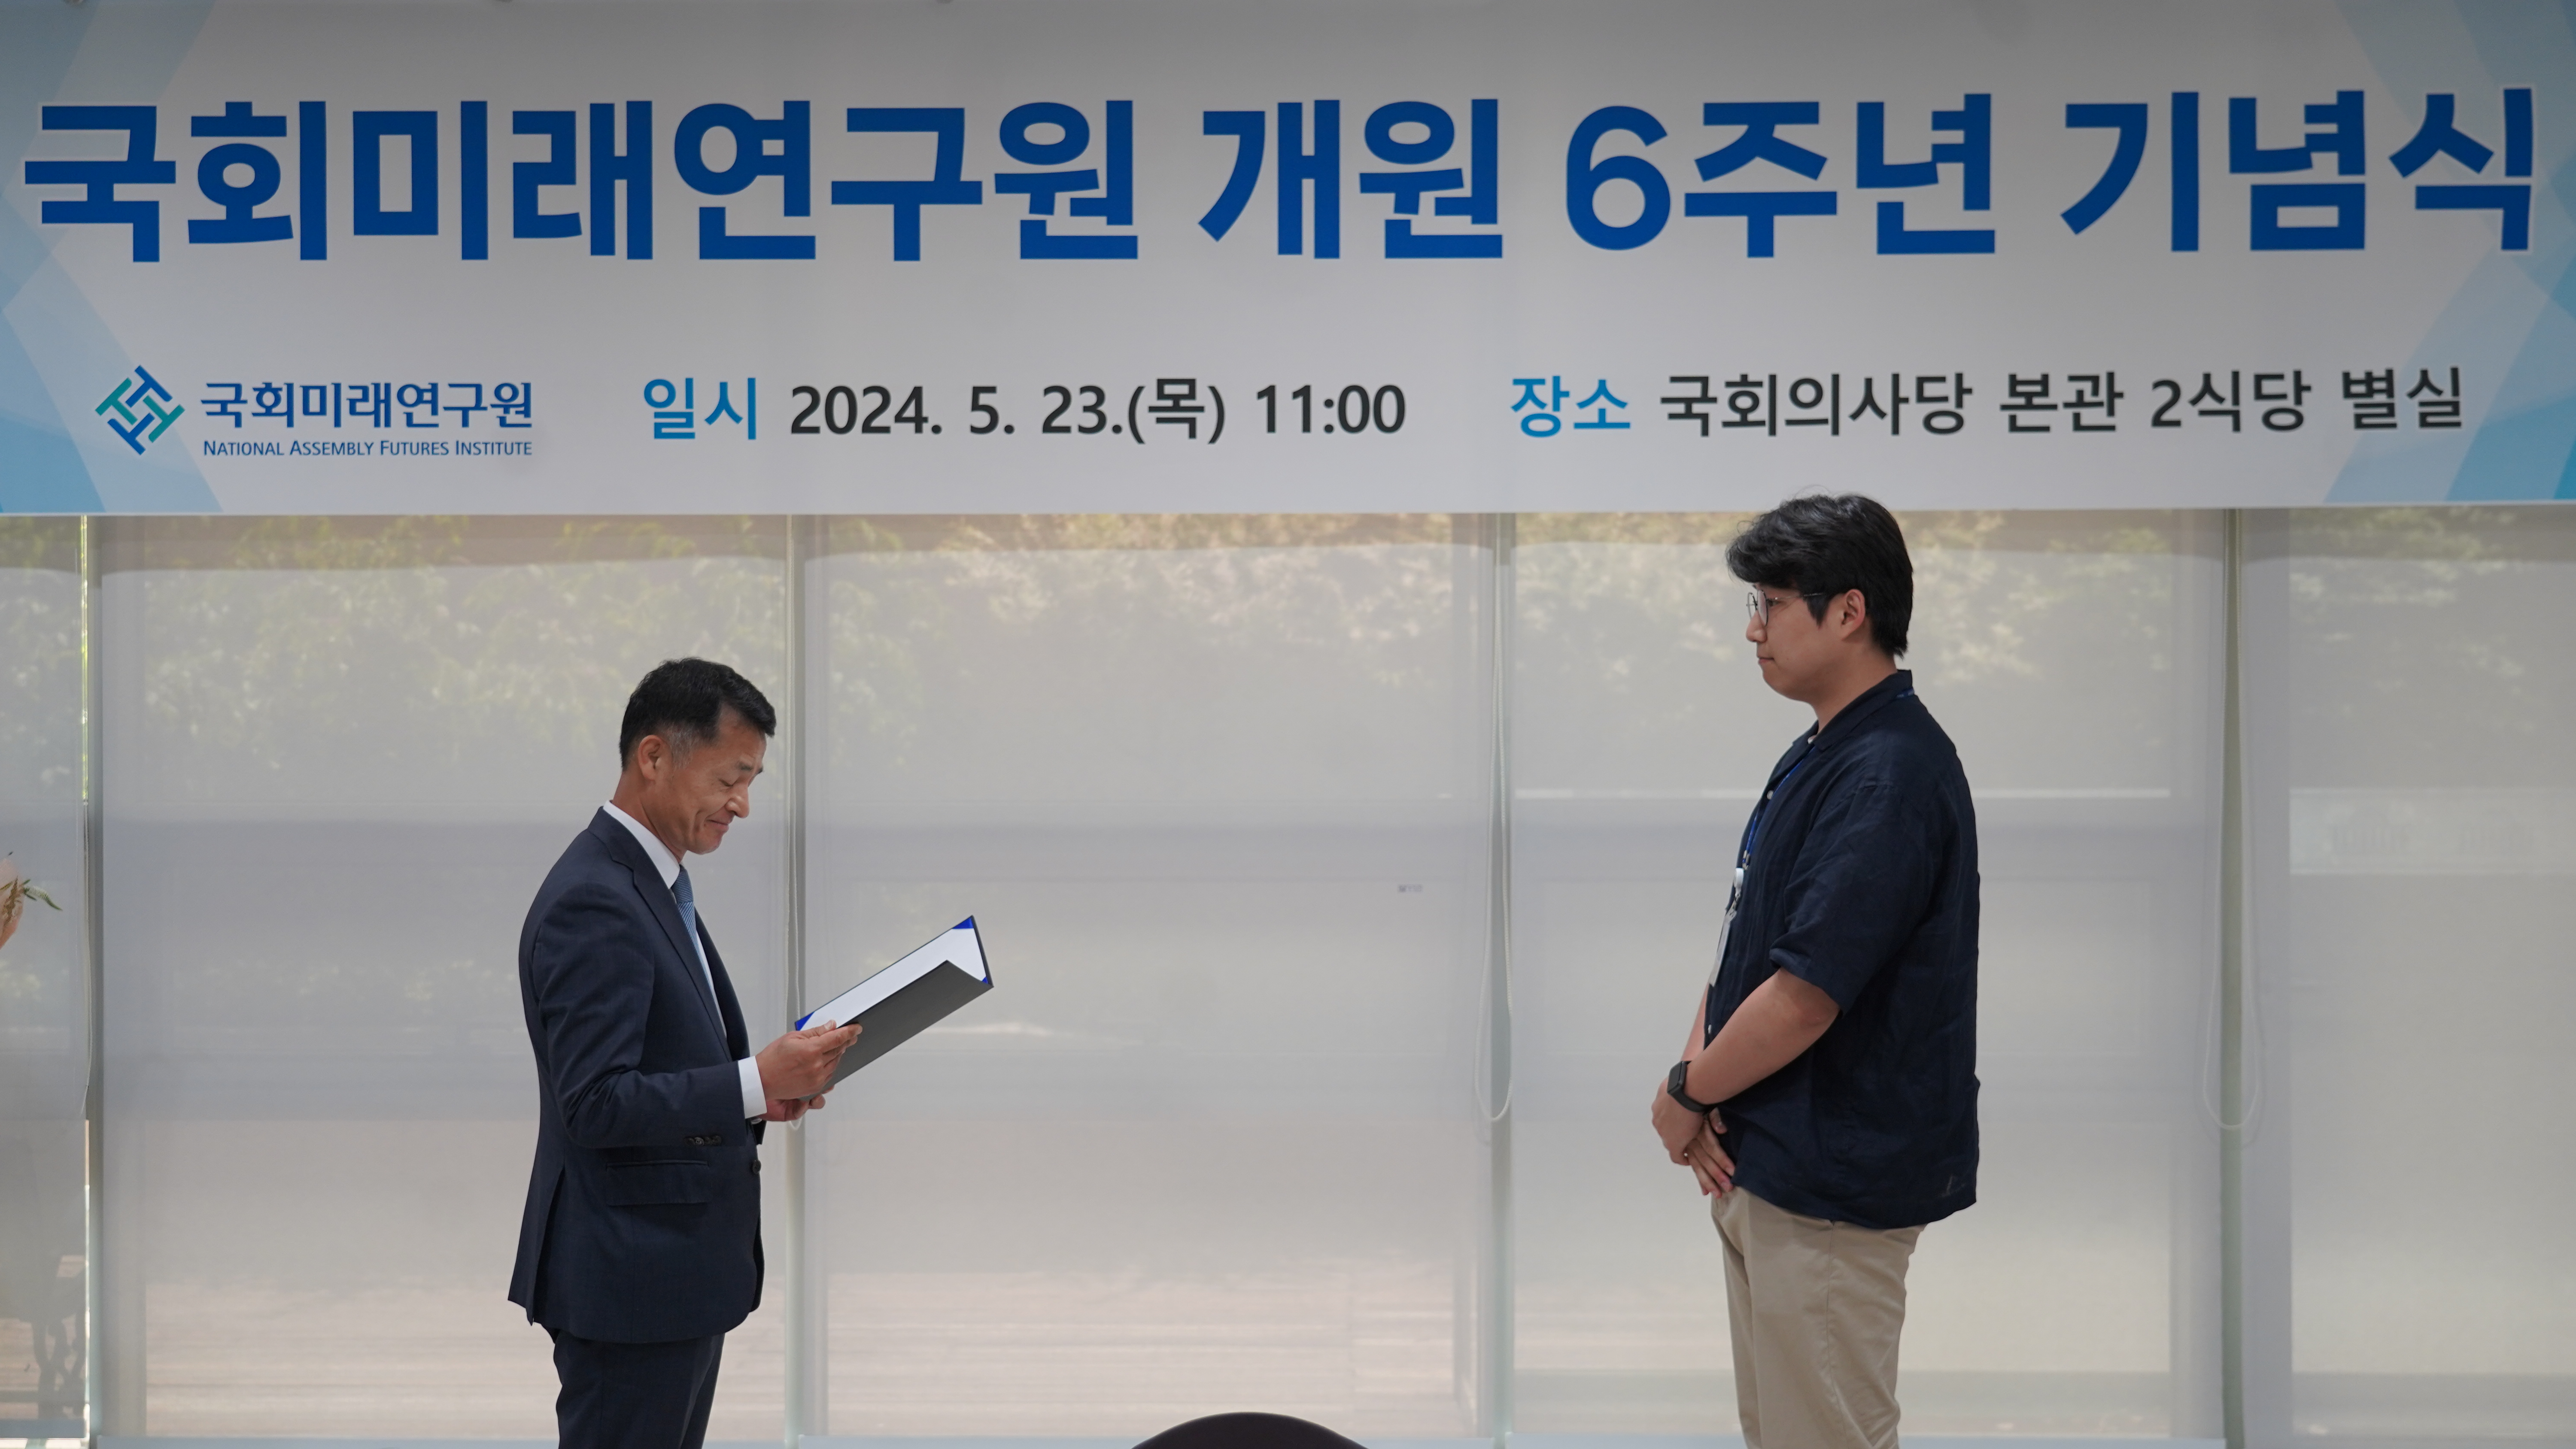 [05.23] 국회미래연구원, 개원 6주년 기념식 개최9